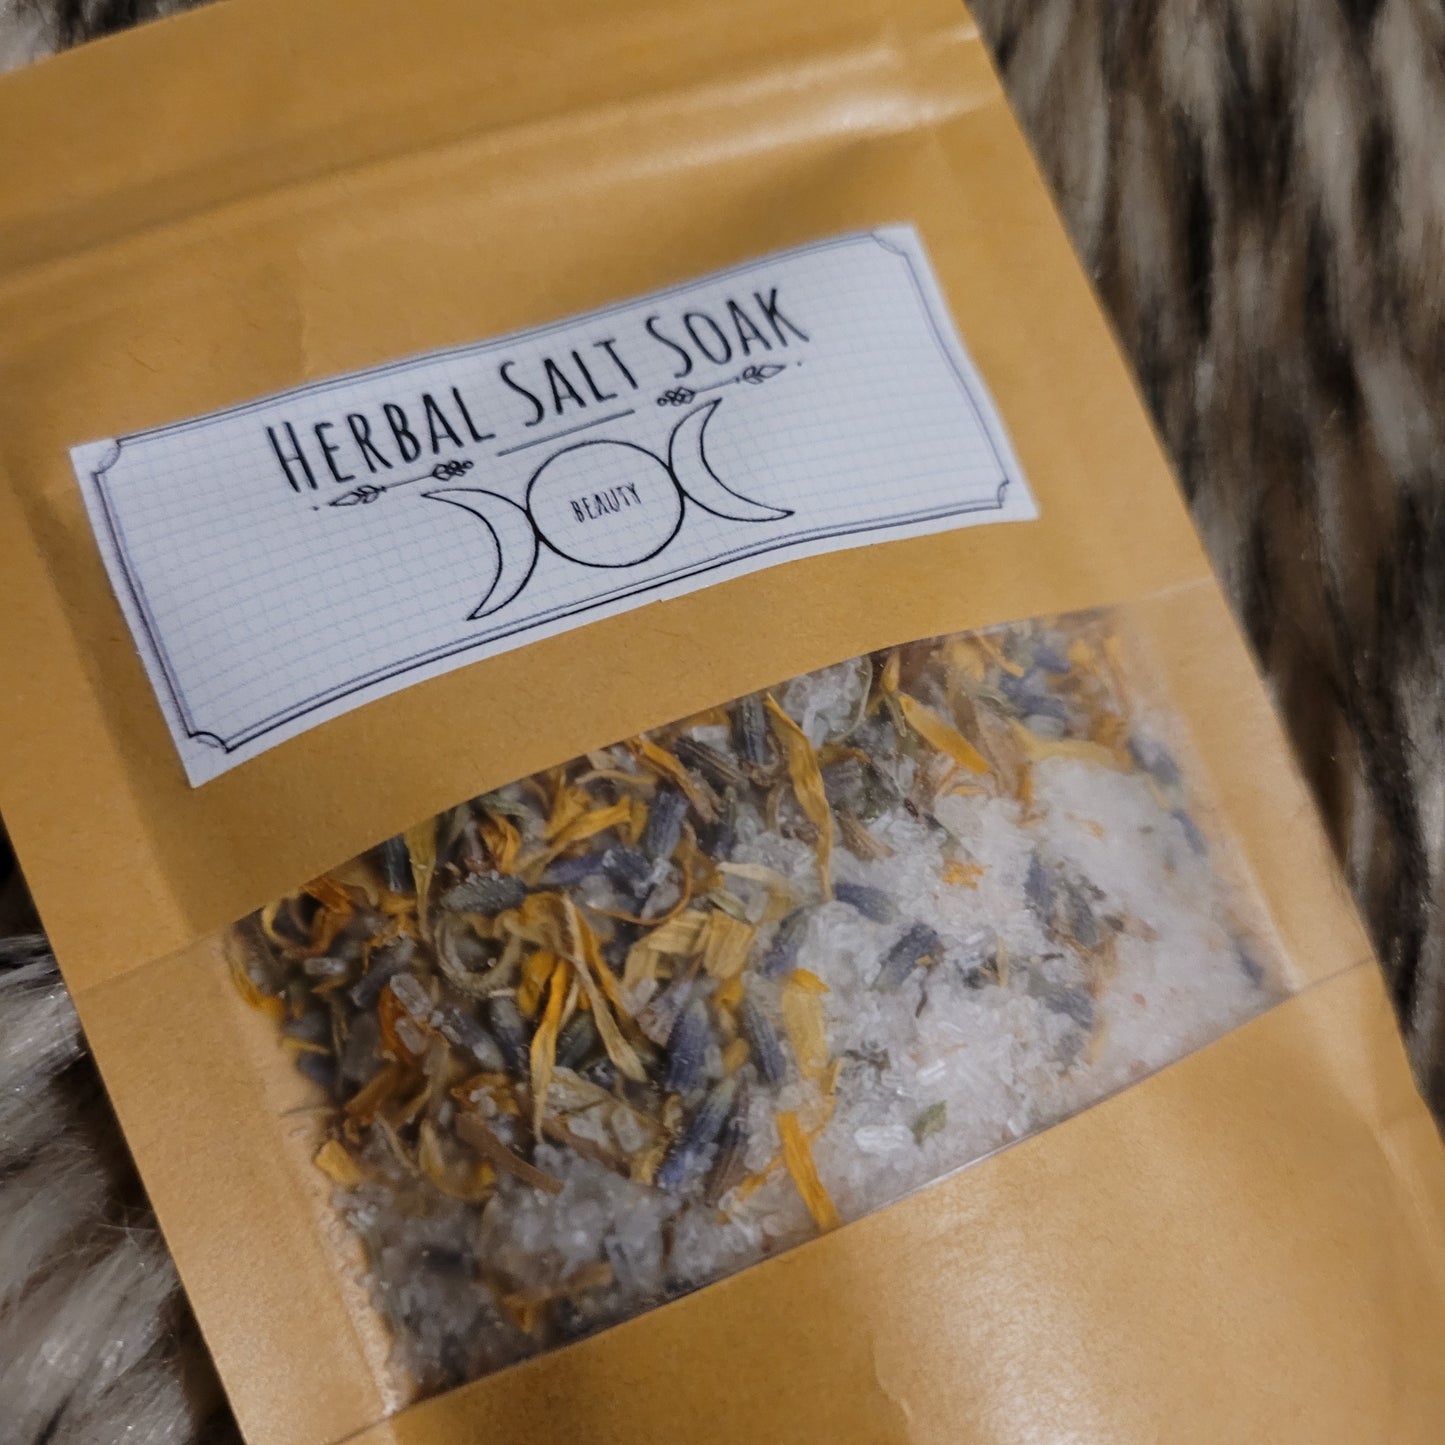 Herbal Salt Soak